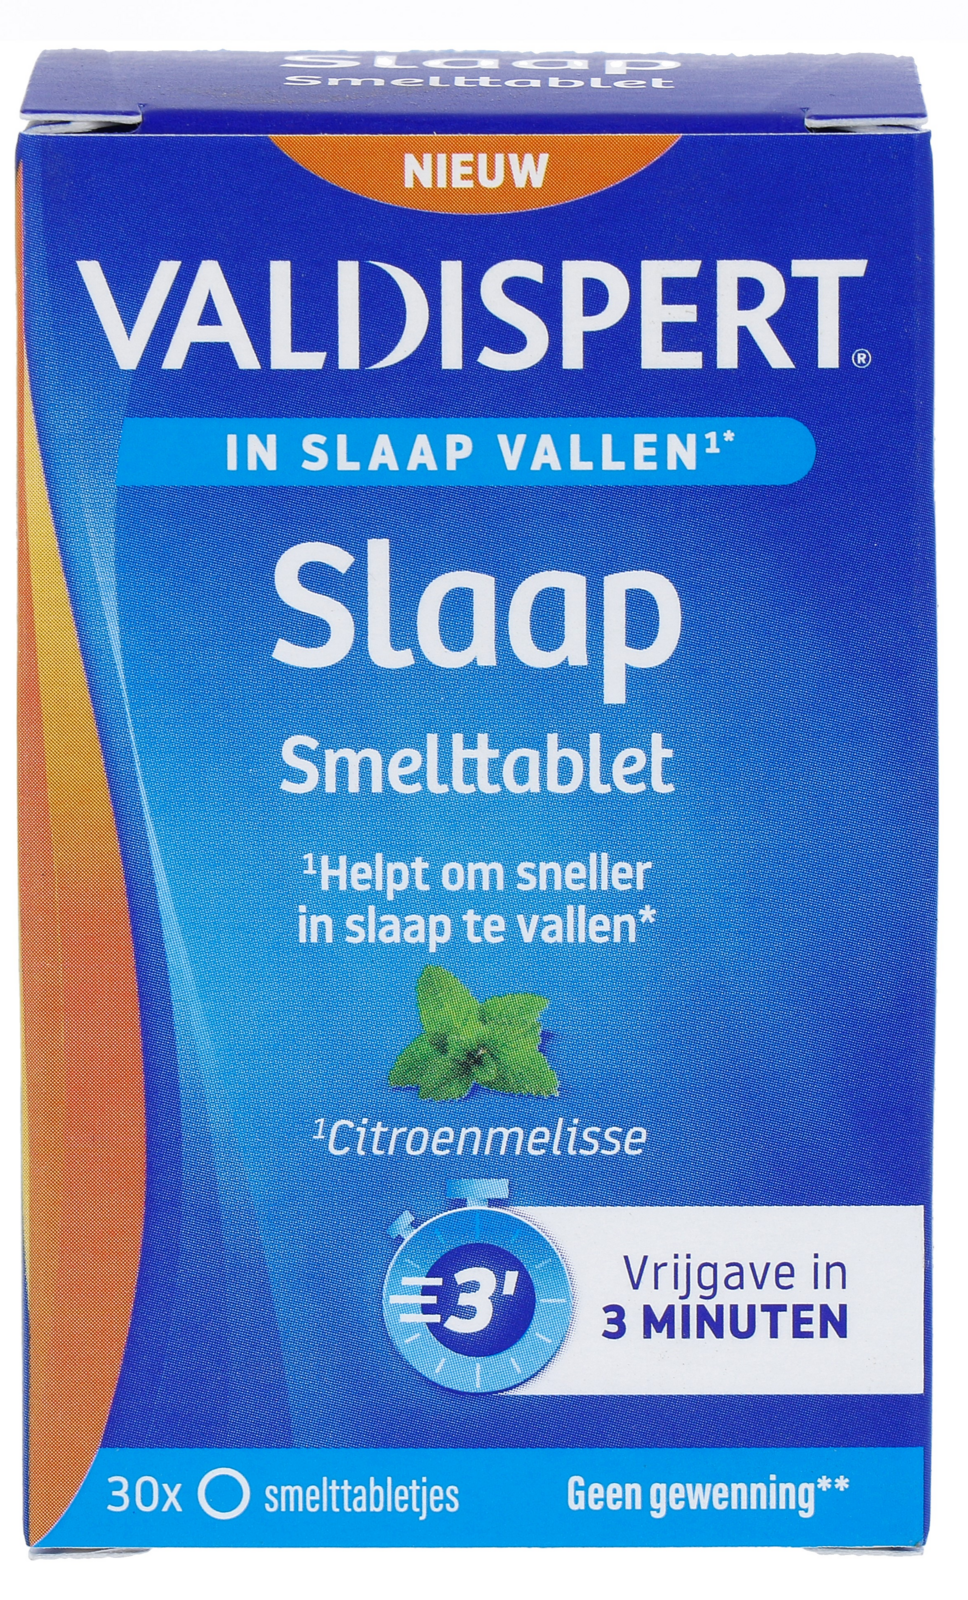 Image of Valdispert Slaap Smeltablet